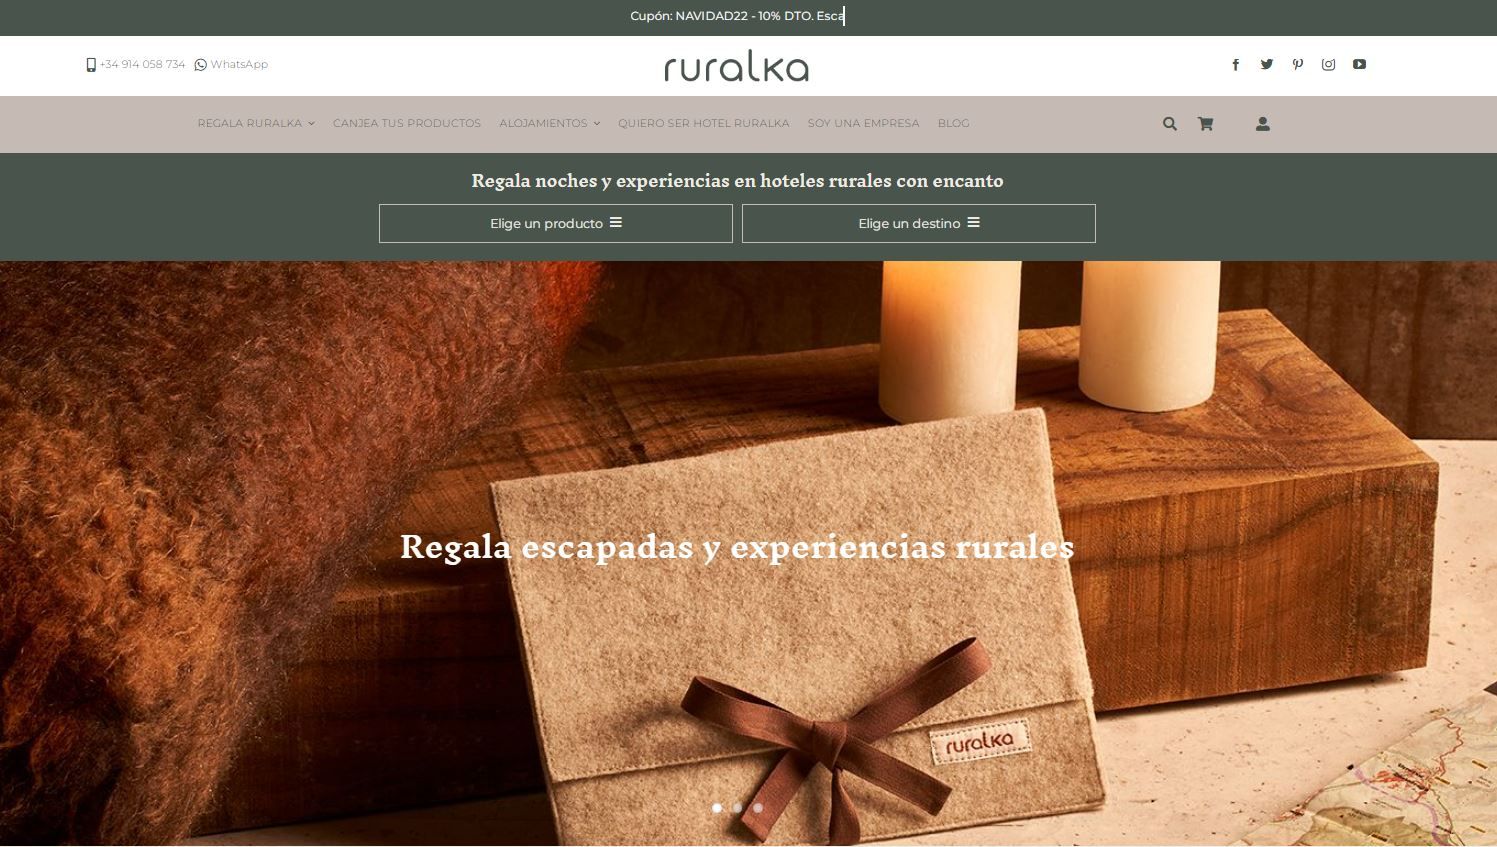 Ruralka lanza su nuevo ecommerce tras un rebranding completo de la marca. 